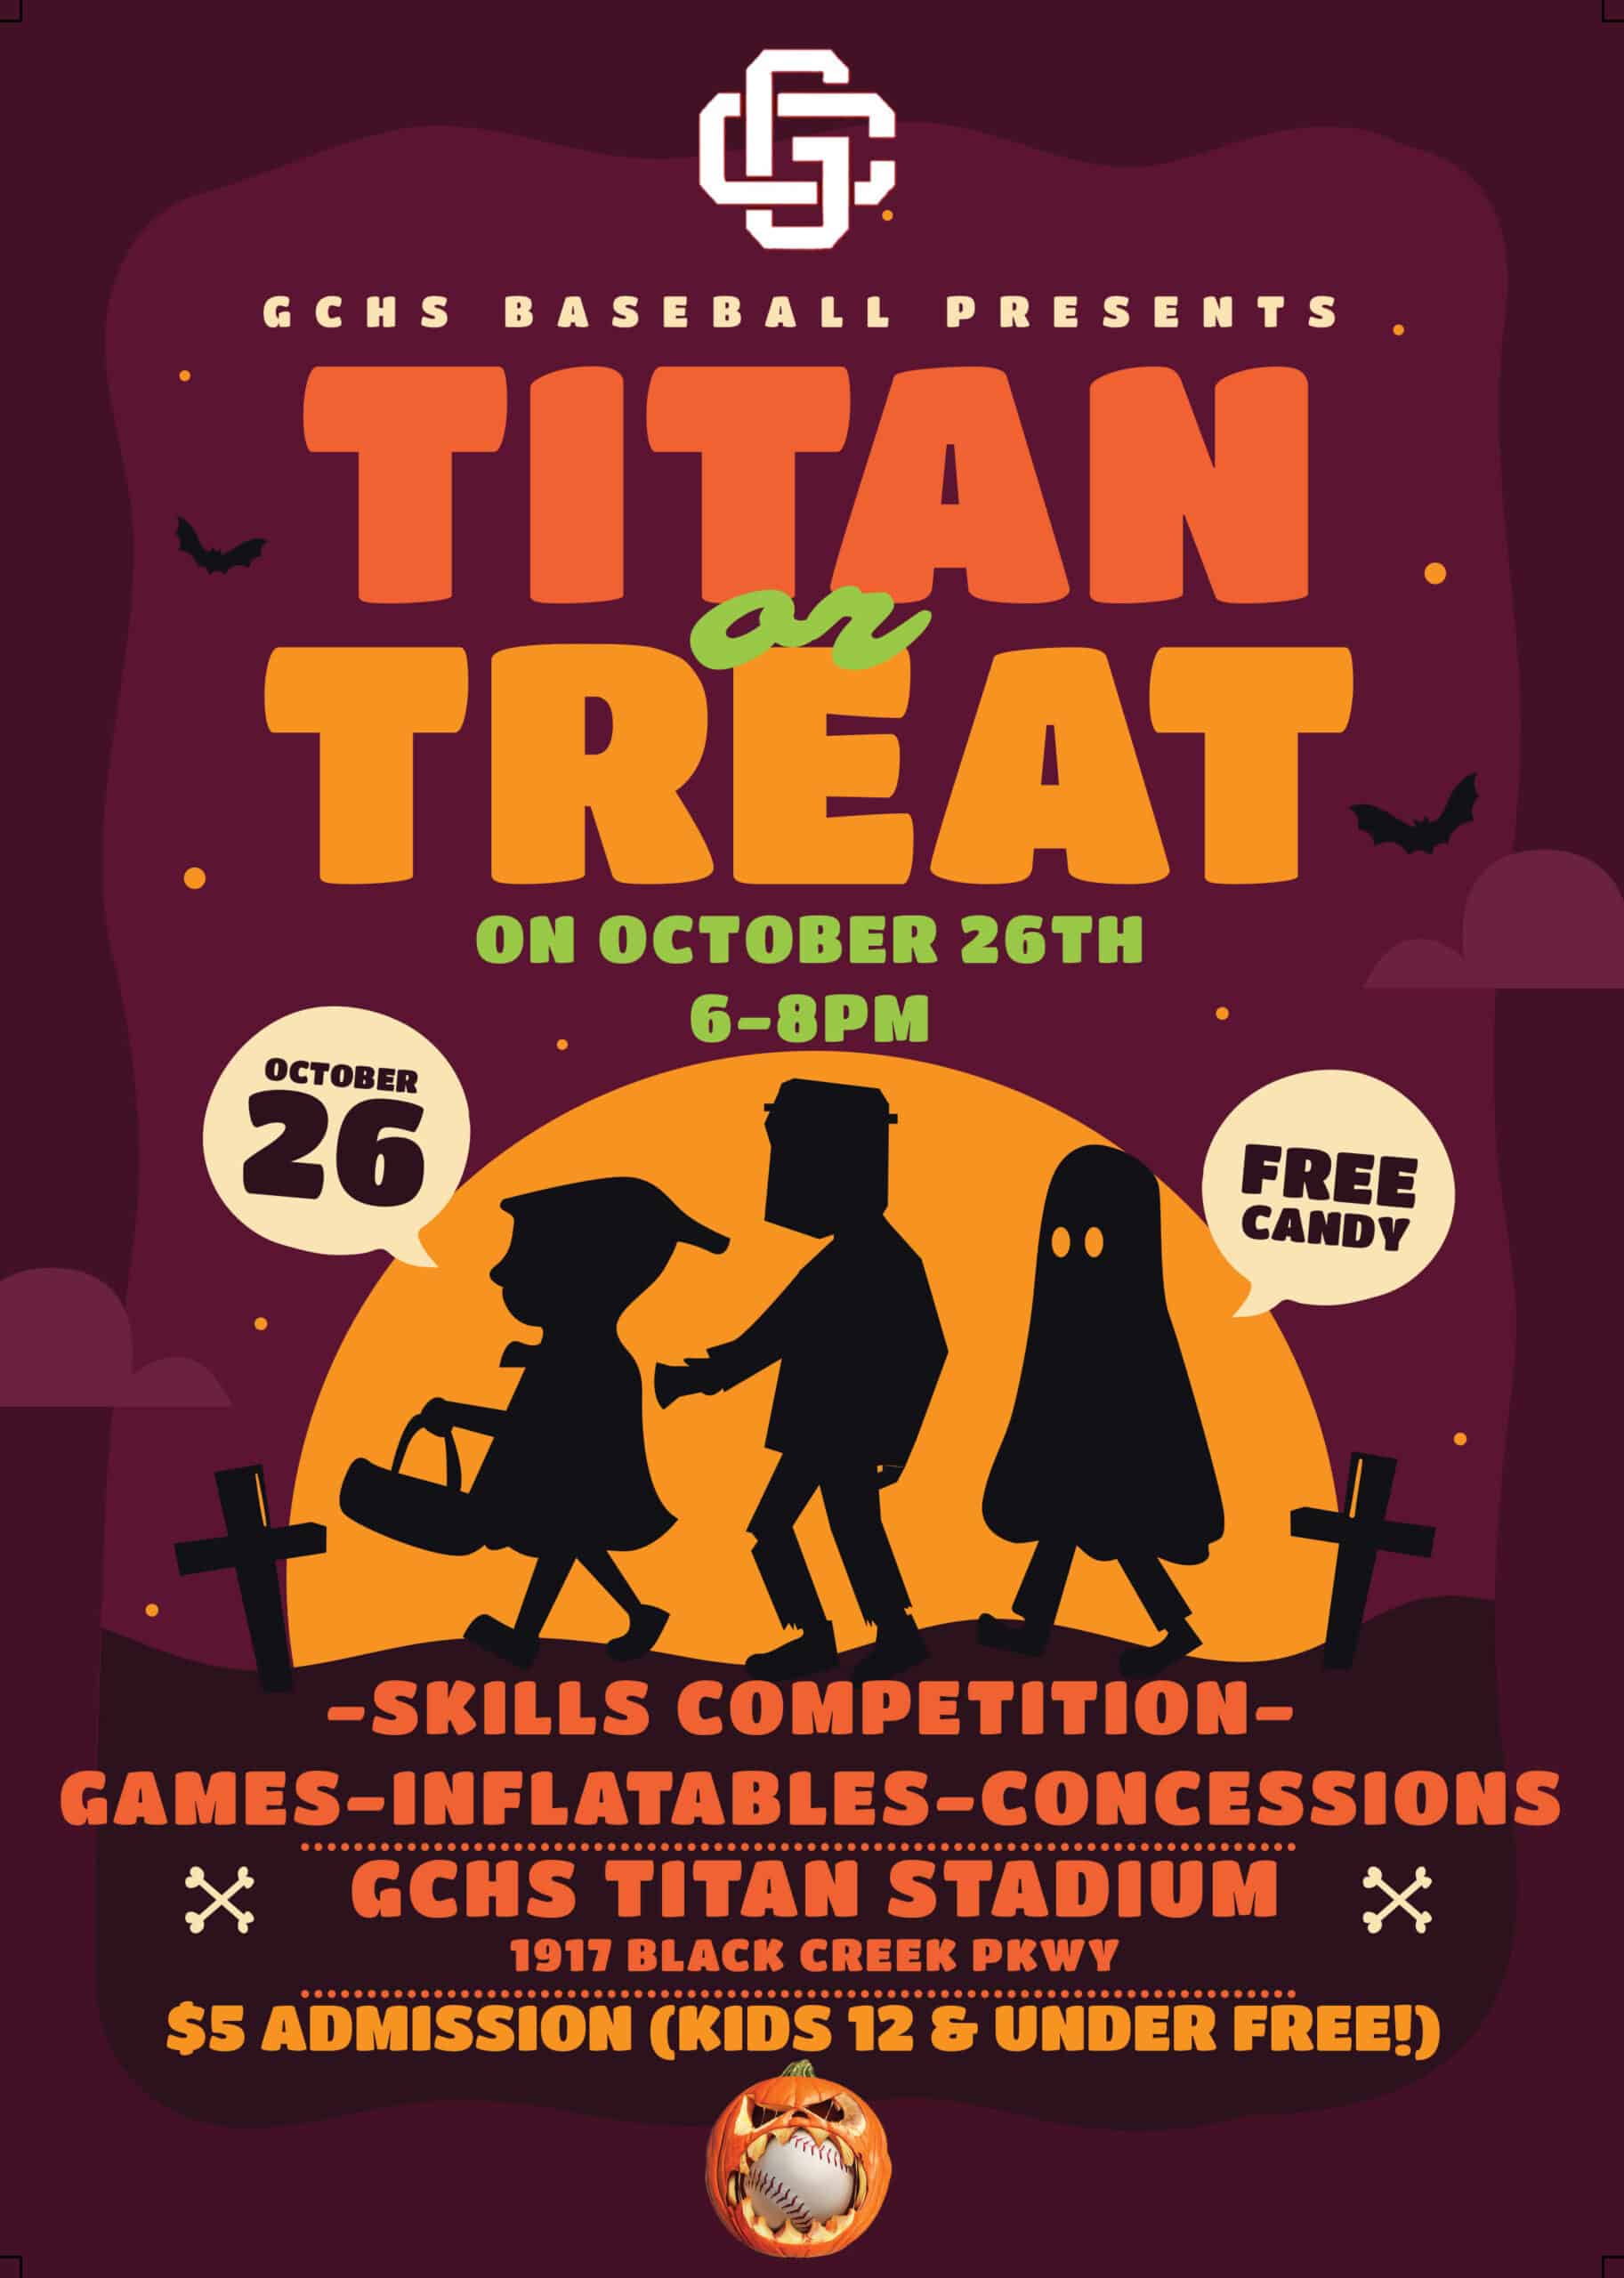 titan or treat